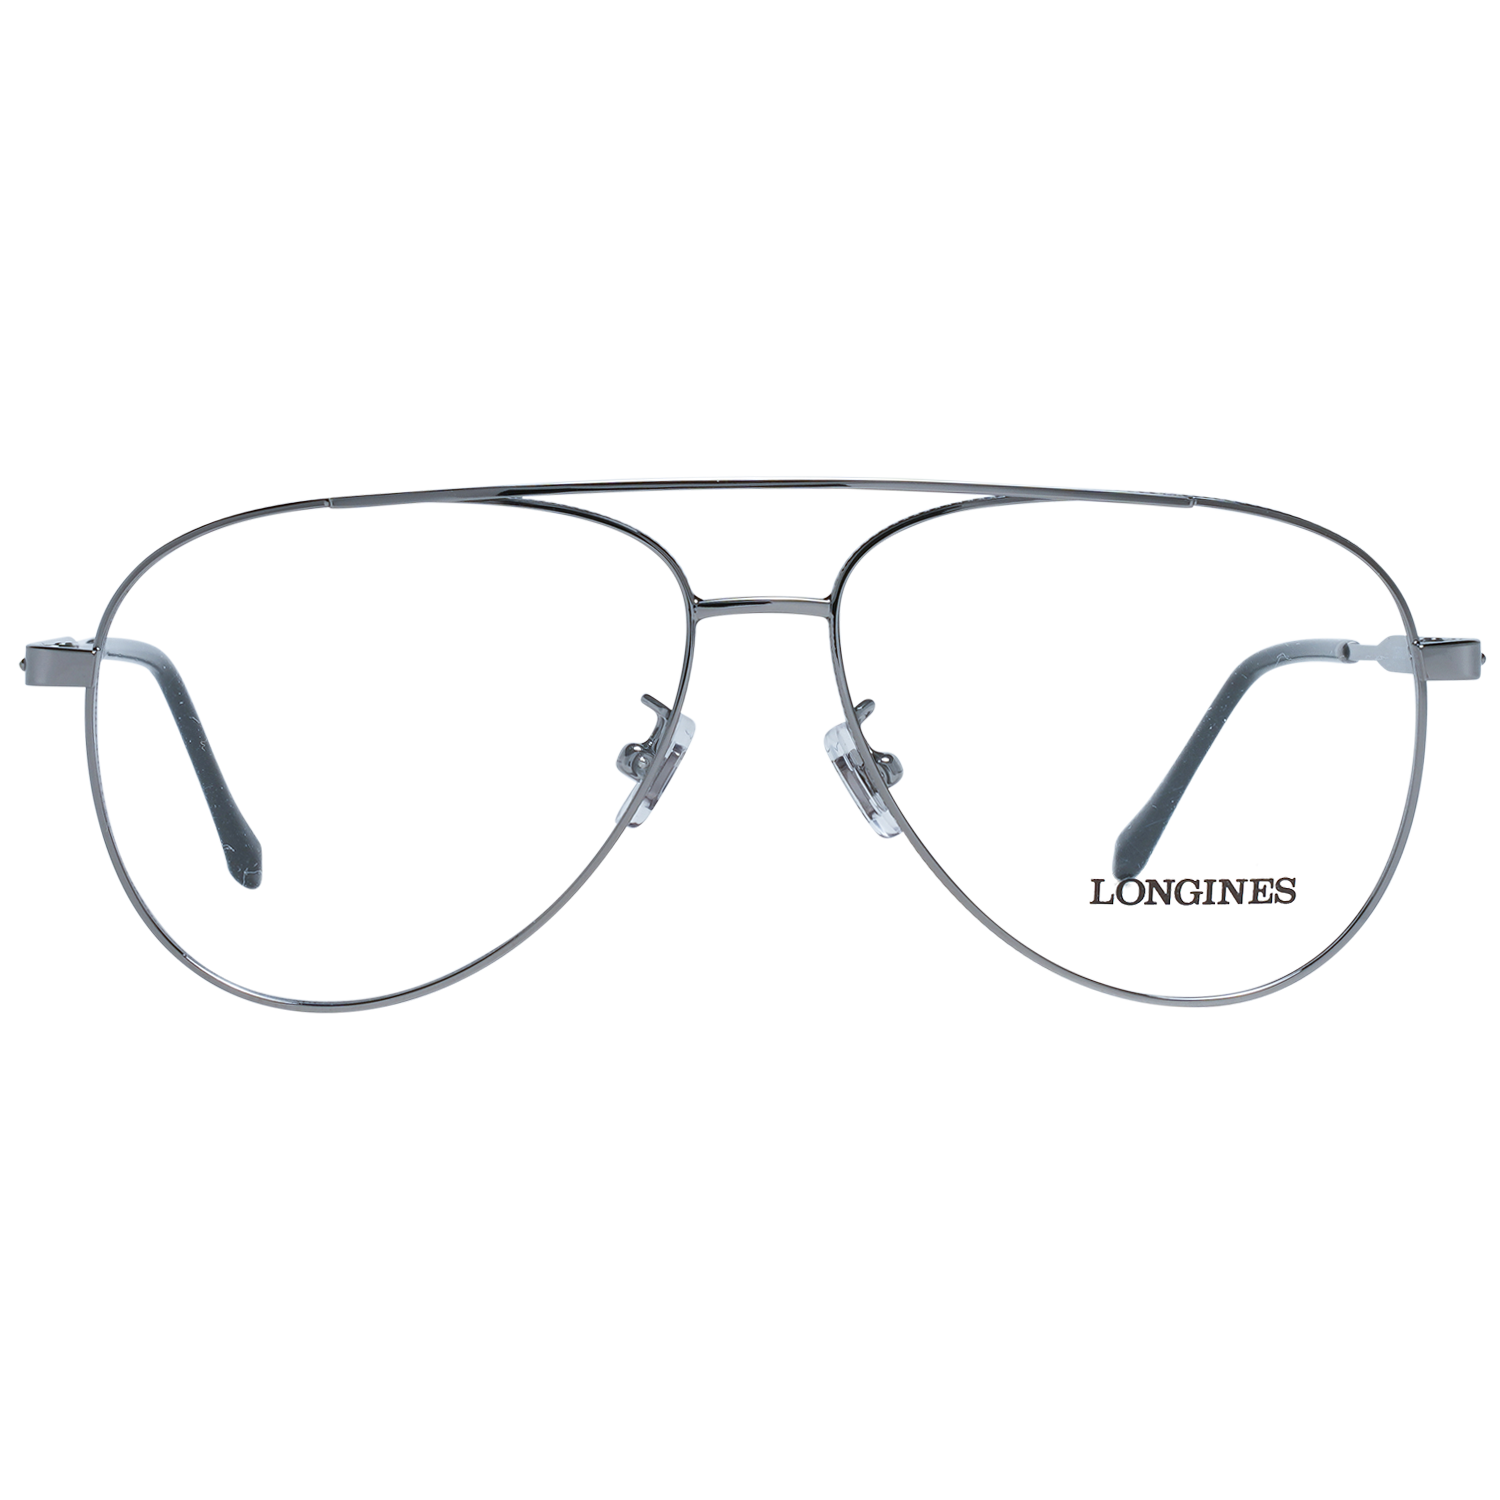 Longines Frames Longines Optical Frame LG5003-H 008 56 Eyeglasses Eyewear UK USA Australia 